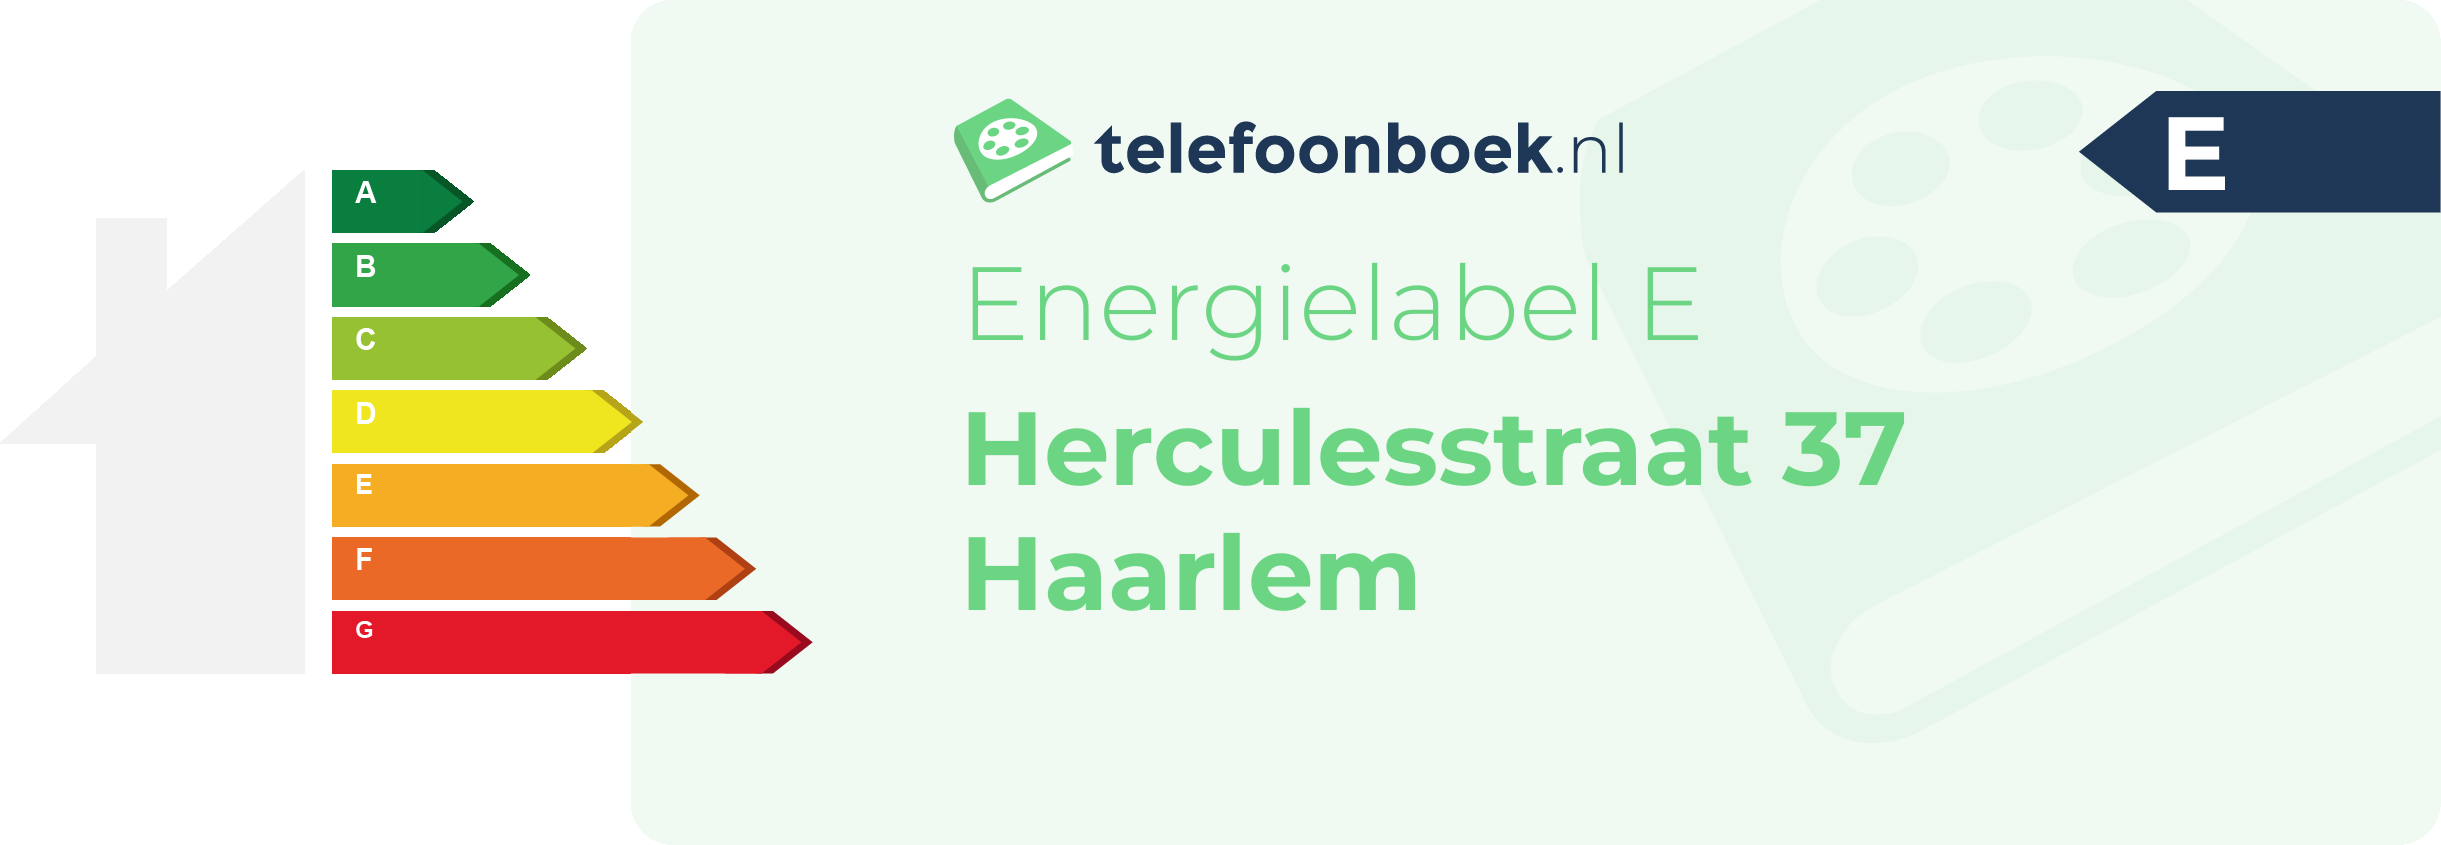 Energielabel Herculesstraat 37 Haarlem